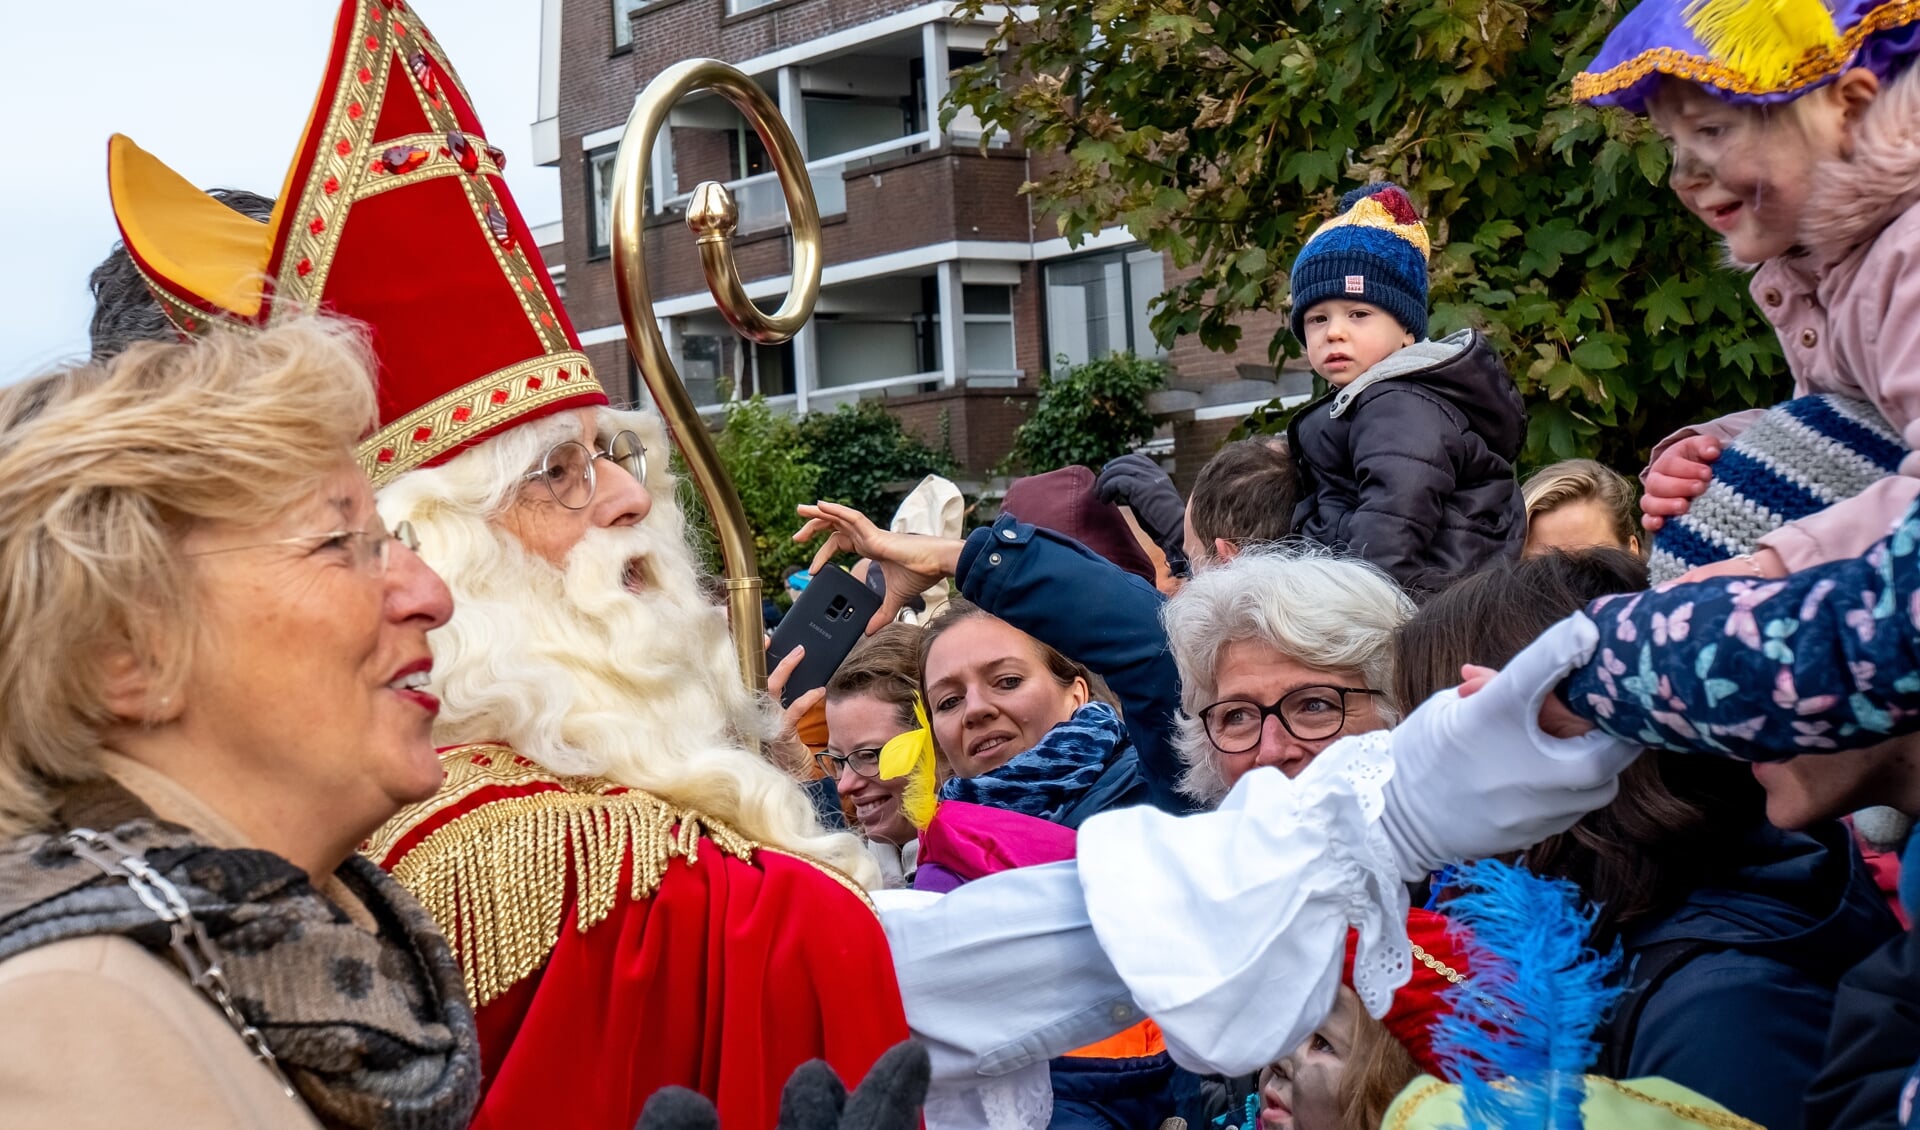 Traditioneel wordt Sinterklaas zodra de pakjesboot afmeert aan de Ockenrode begroet door burgemeester Laila Driessen, waarna hij honderden handjes schudt van daar wachtende kinderen en hun ouders. Dit jaar gaat het anders en stap hij meteen na aankomt in een koest voor een rondrit door het dorp.